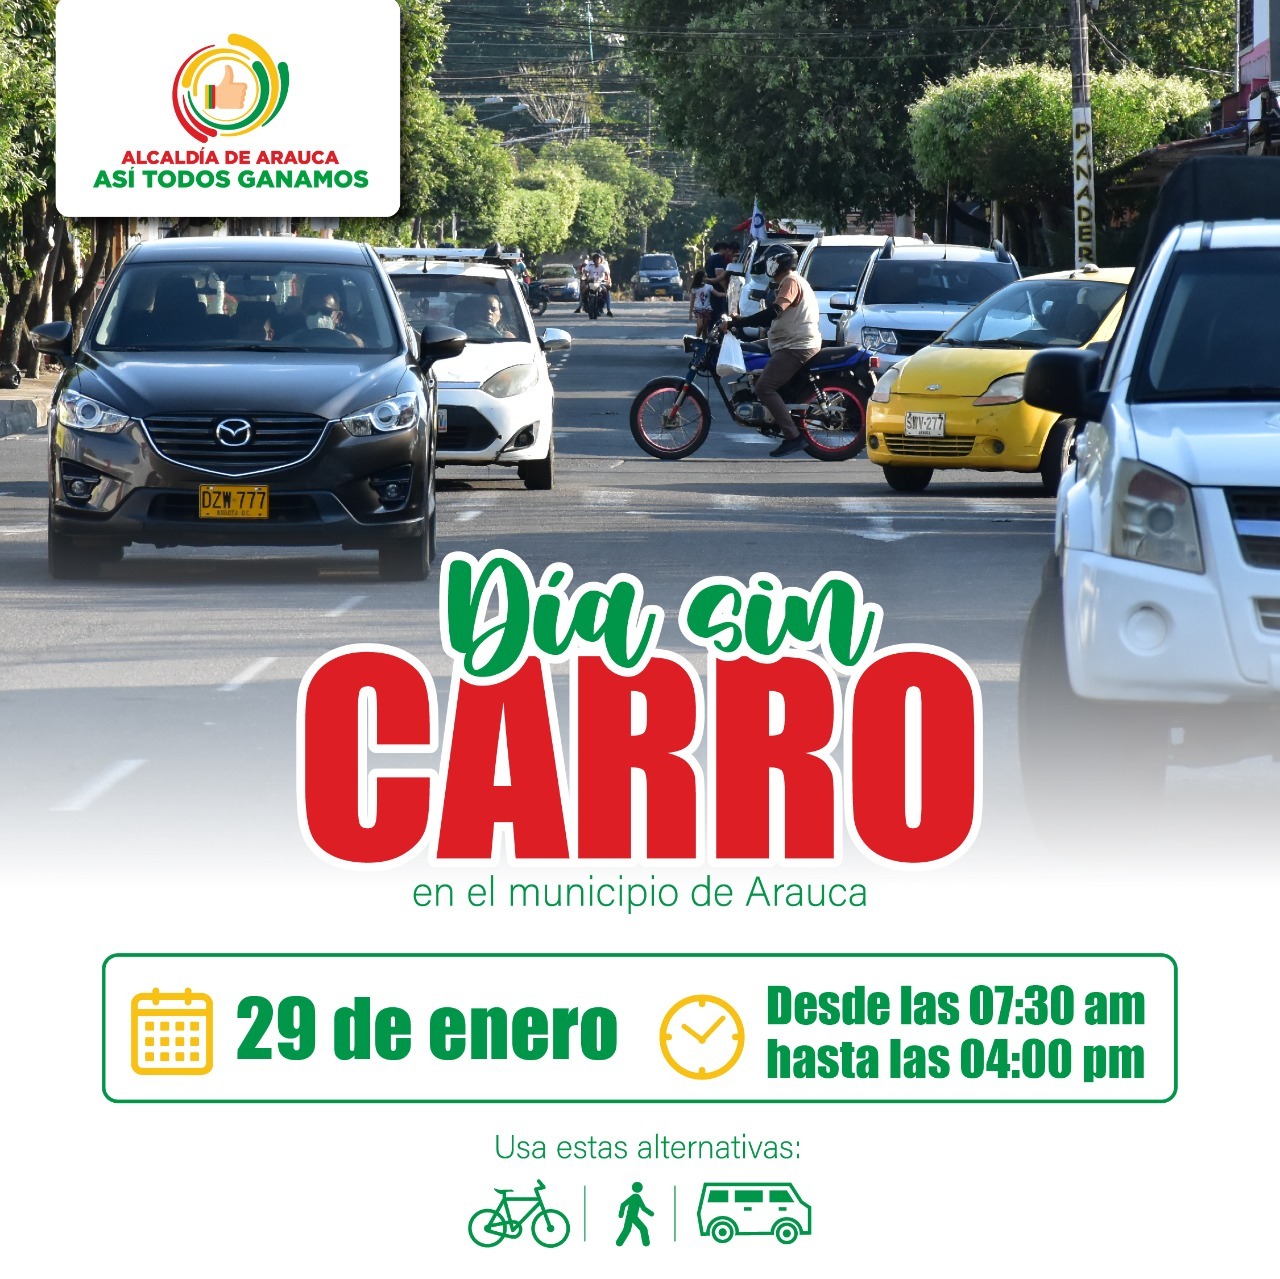 Este sábado 29 de enero se realizará en Arauca el Día sin Carro